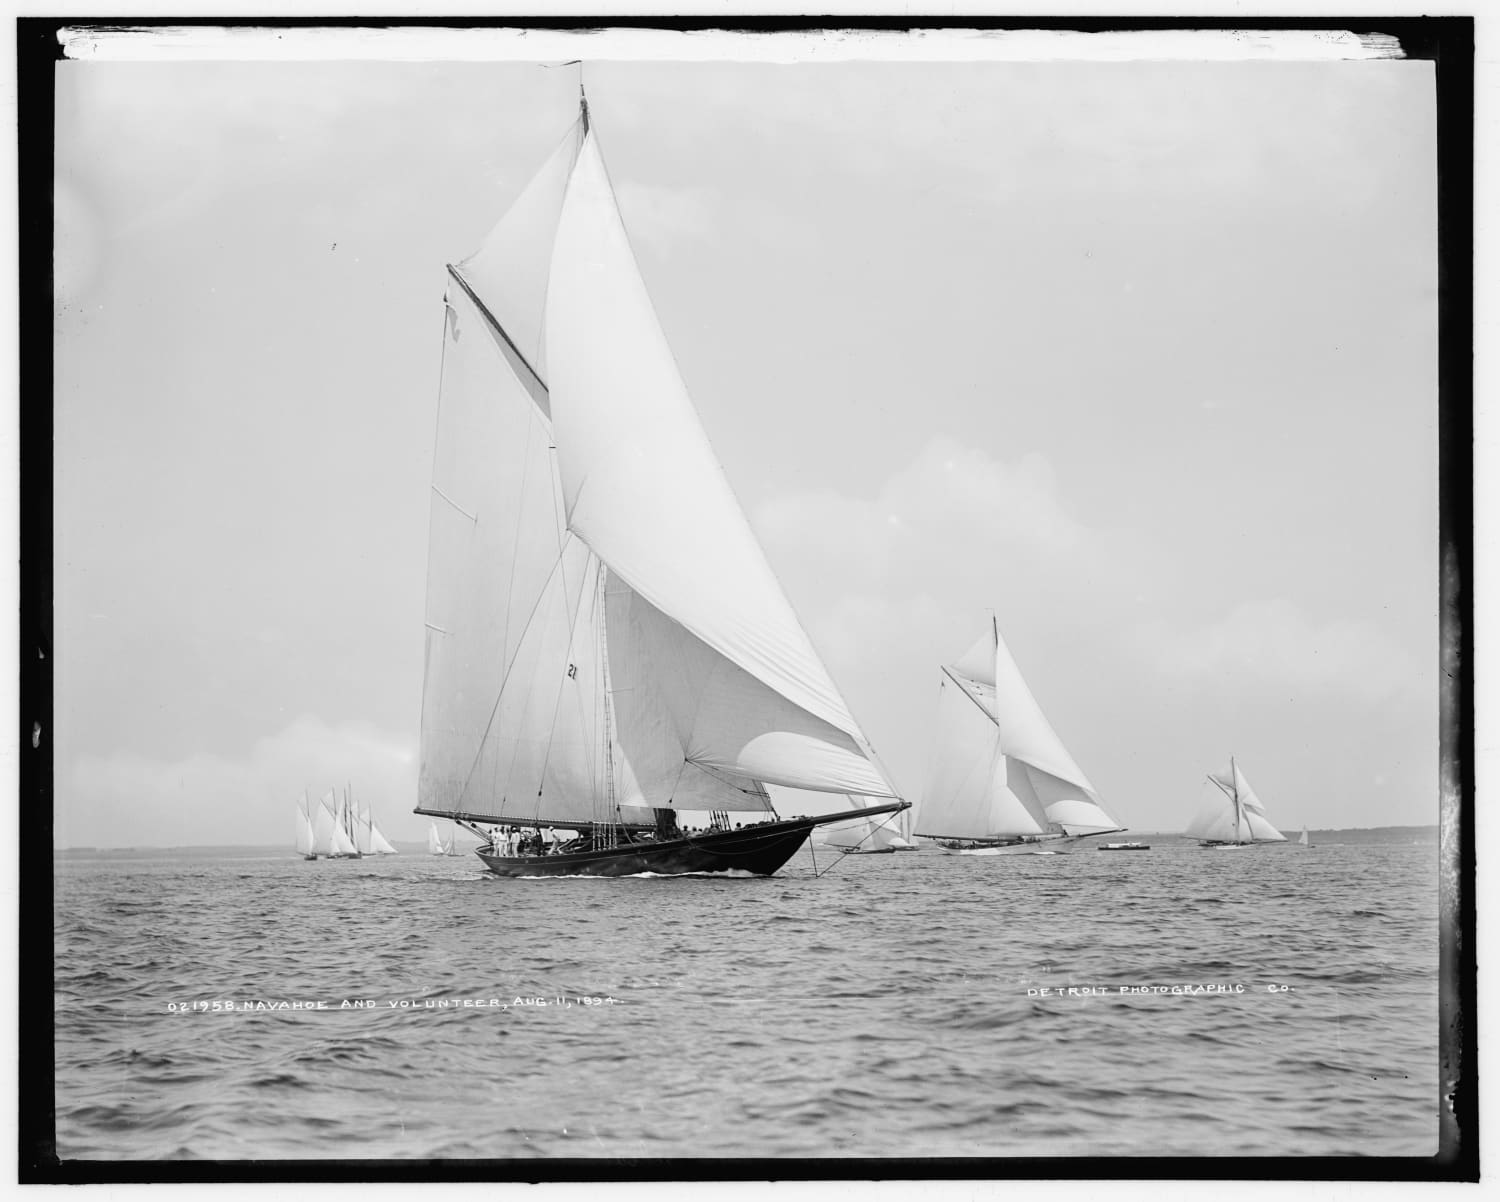 Yachts Navahoe and Volunteer, 11 August 1894